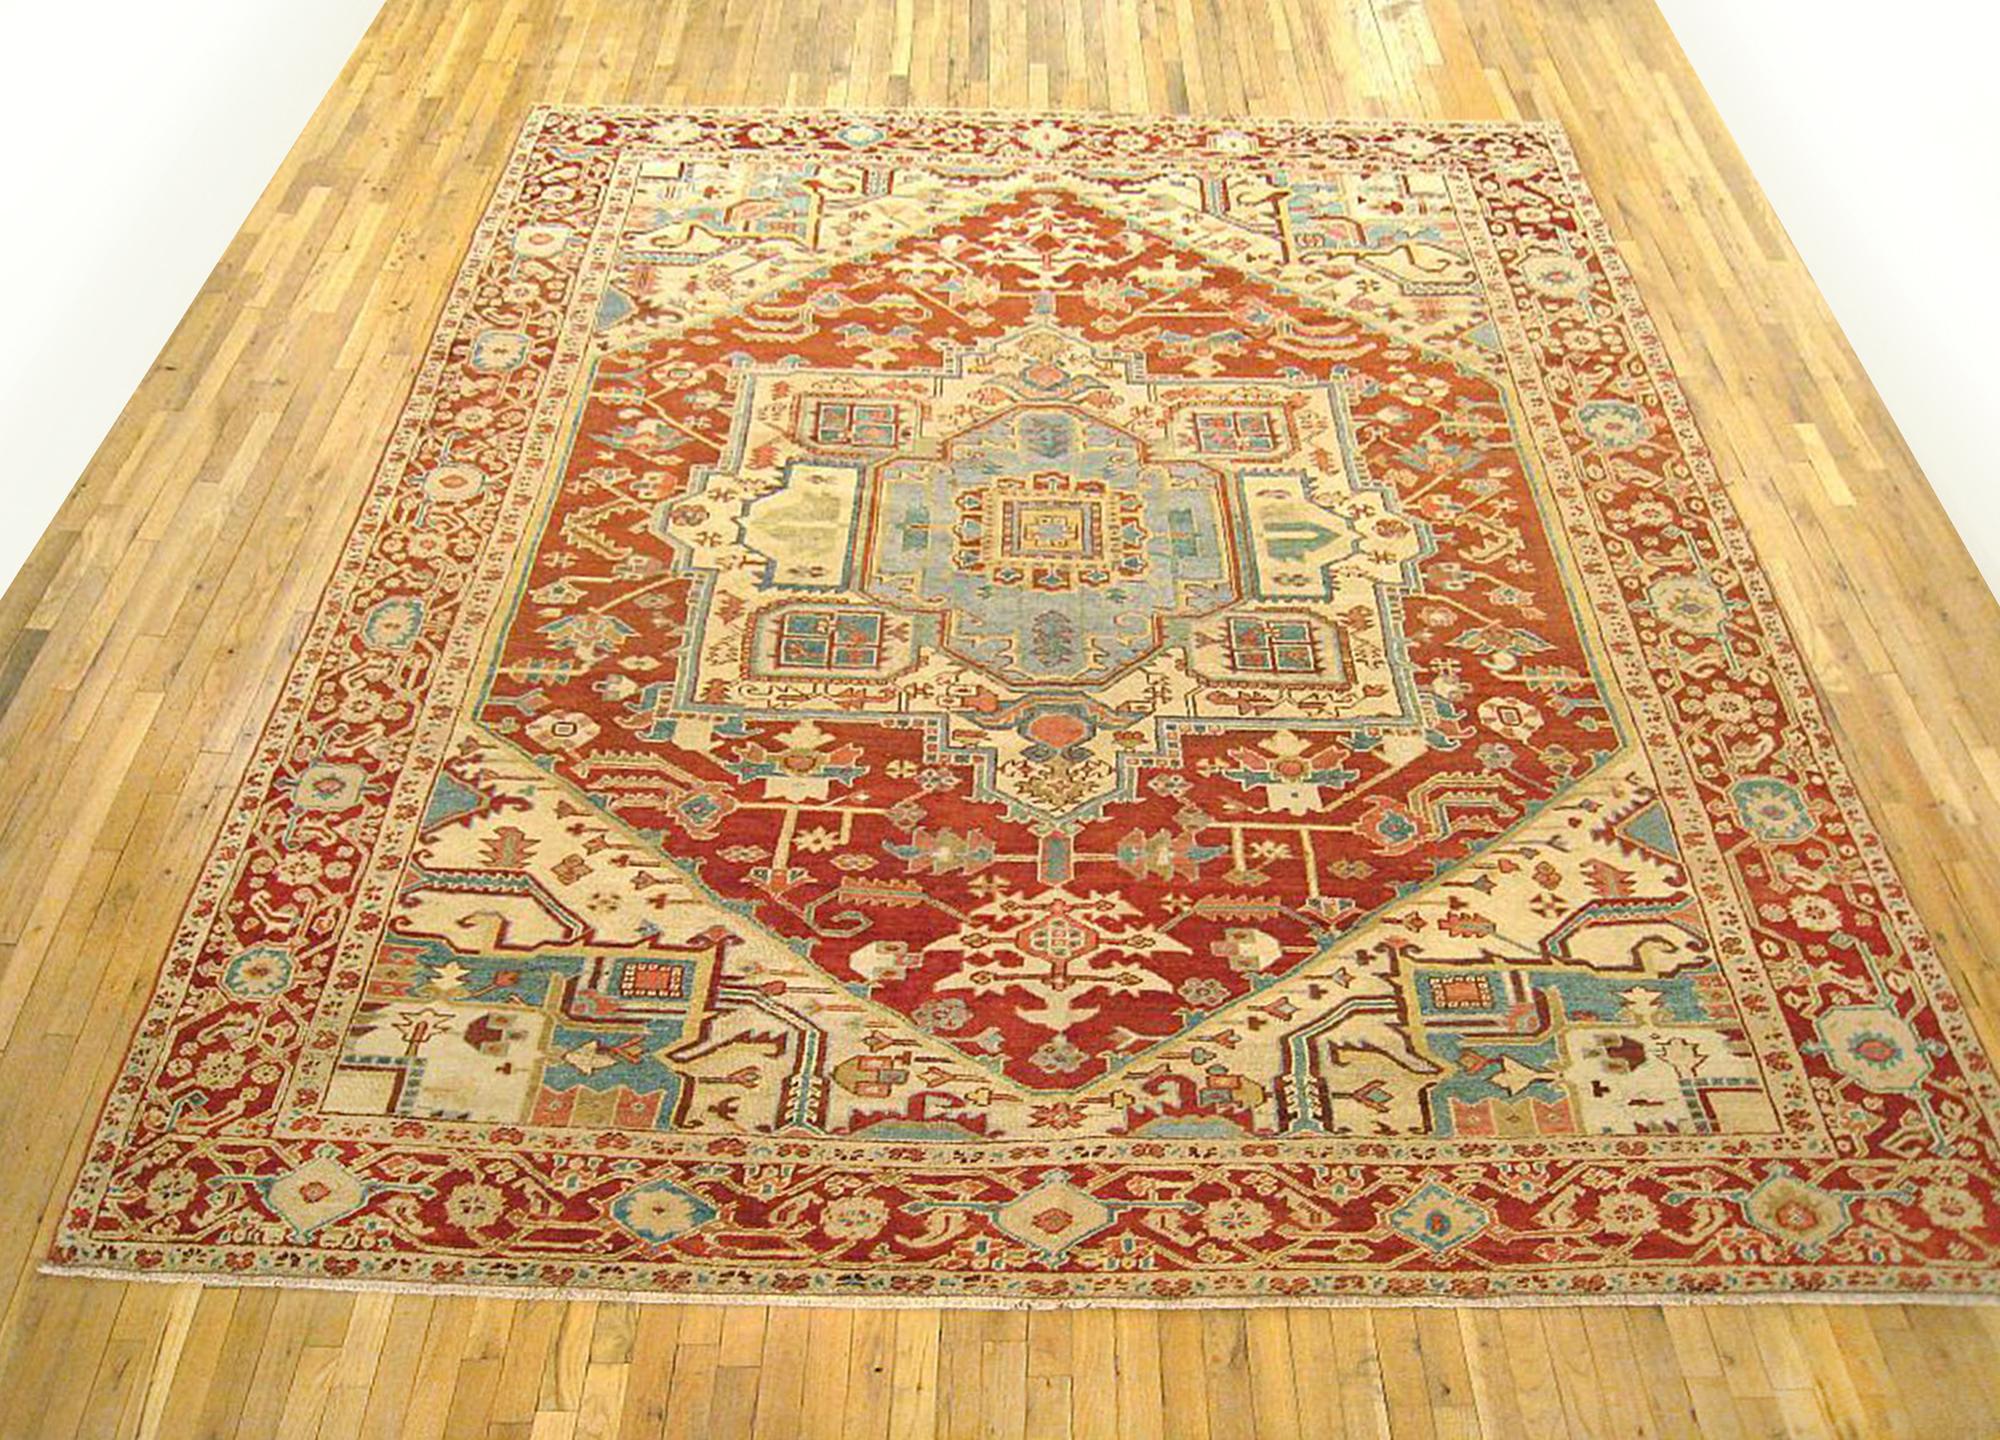 Antique Persian Serapi oriental rug, in room size

An antique Persian Serapi oriental rug, size 11'5